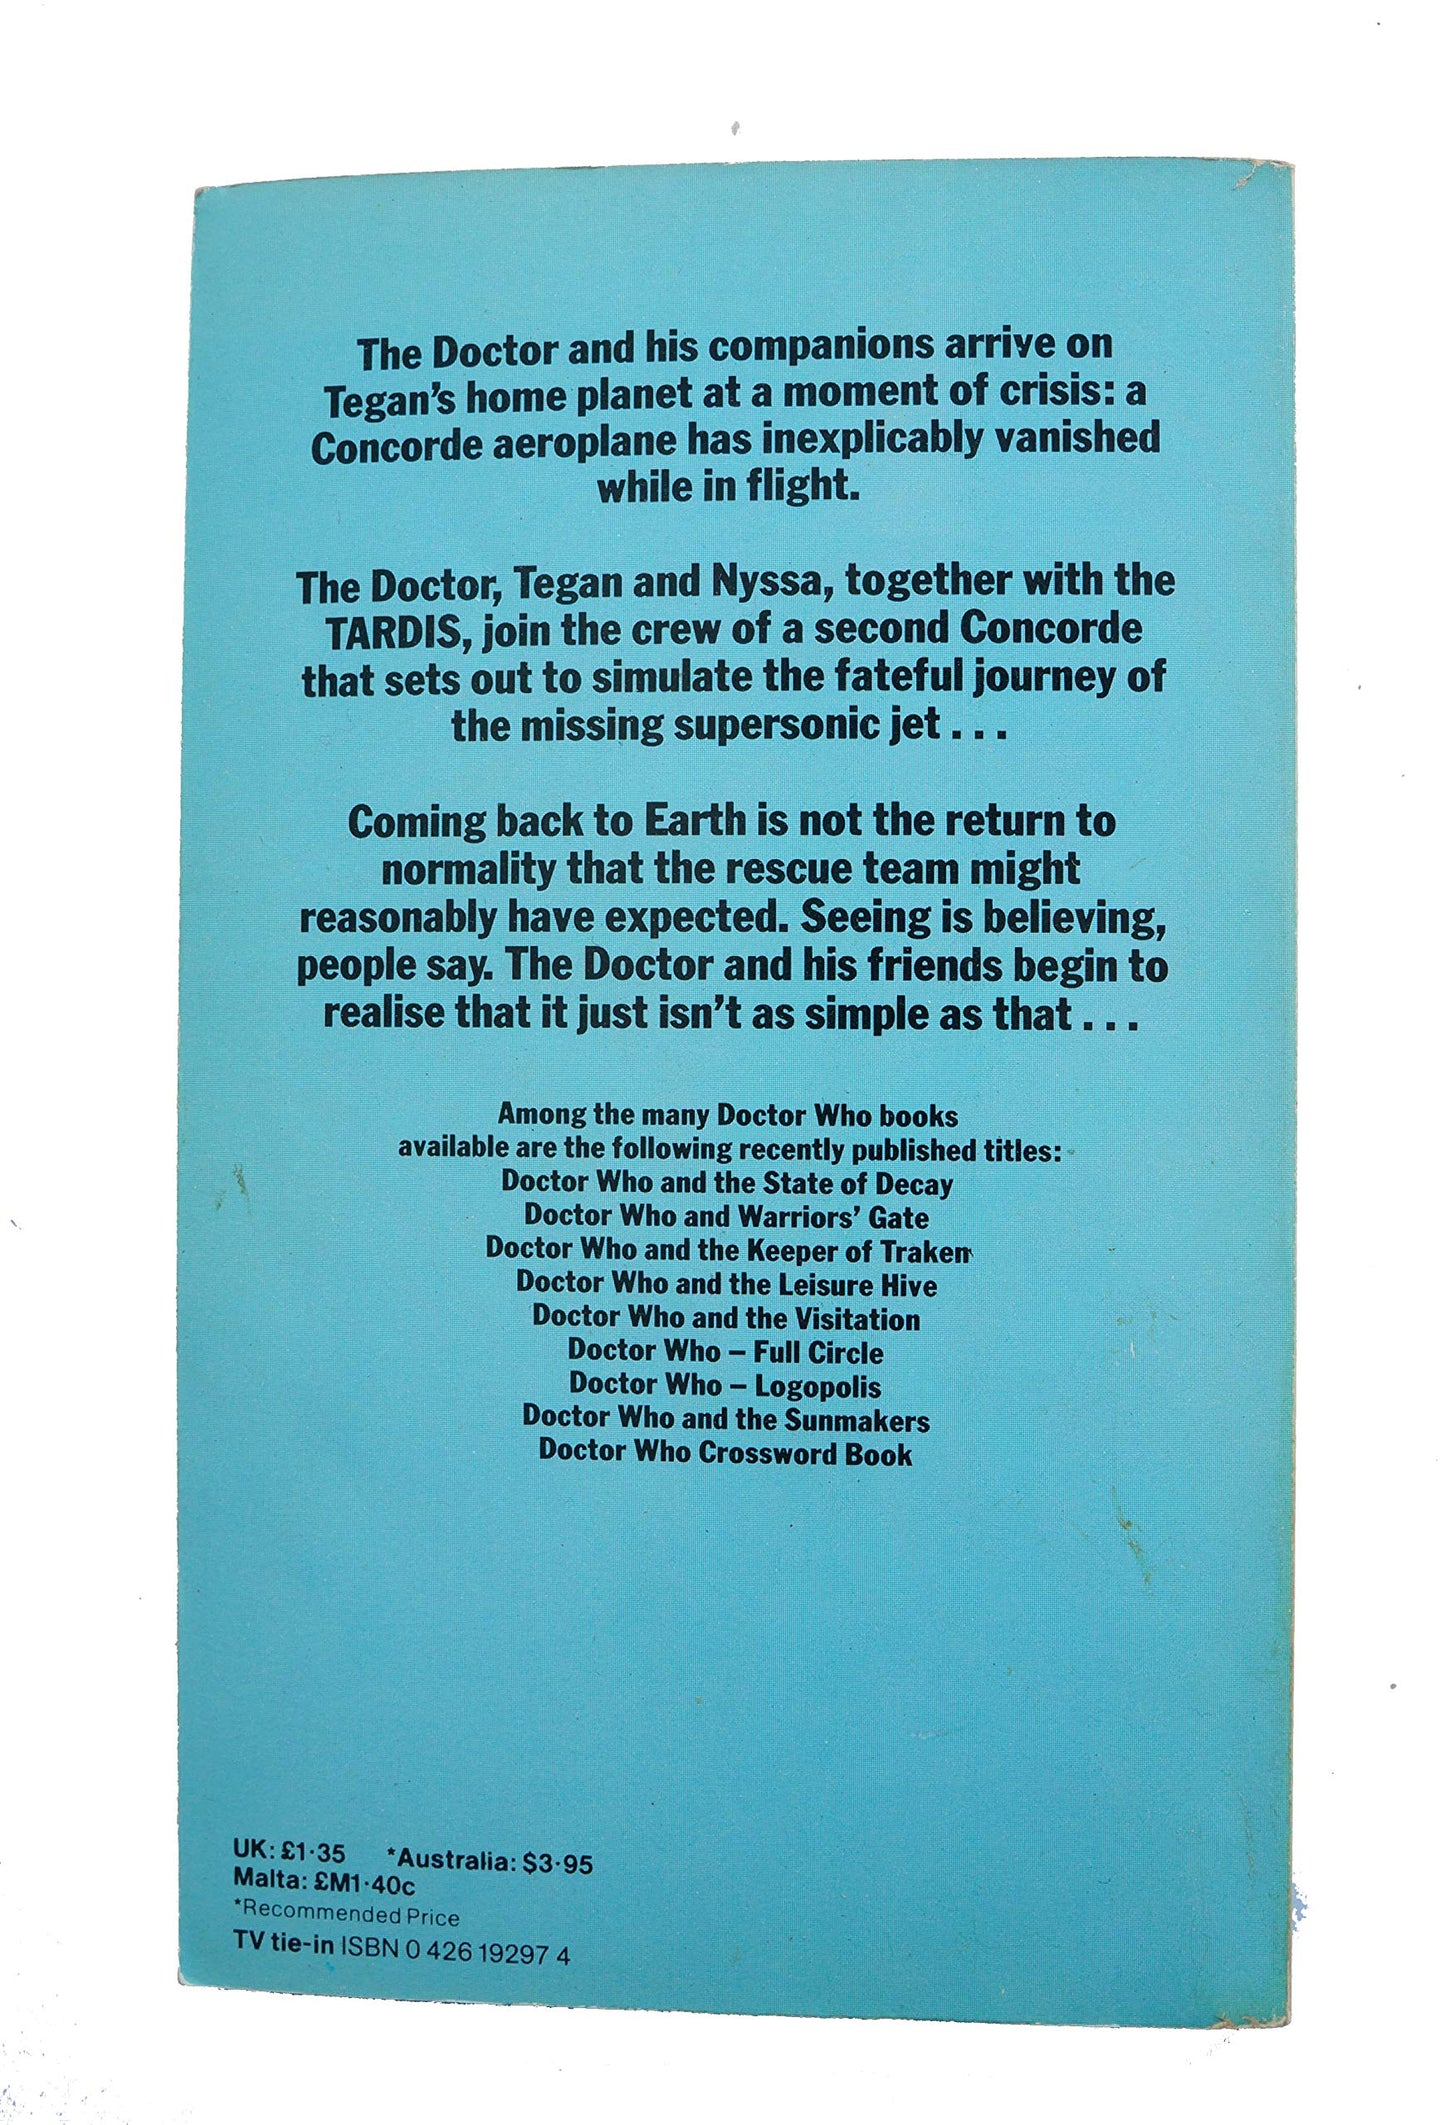 Doctor Who Time Flight Target Paperback Novel 1983 By Peter Grimwade